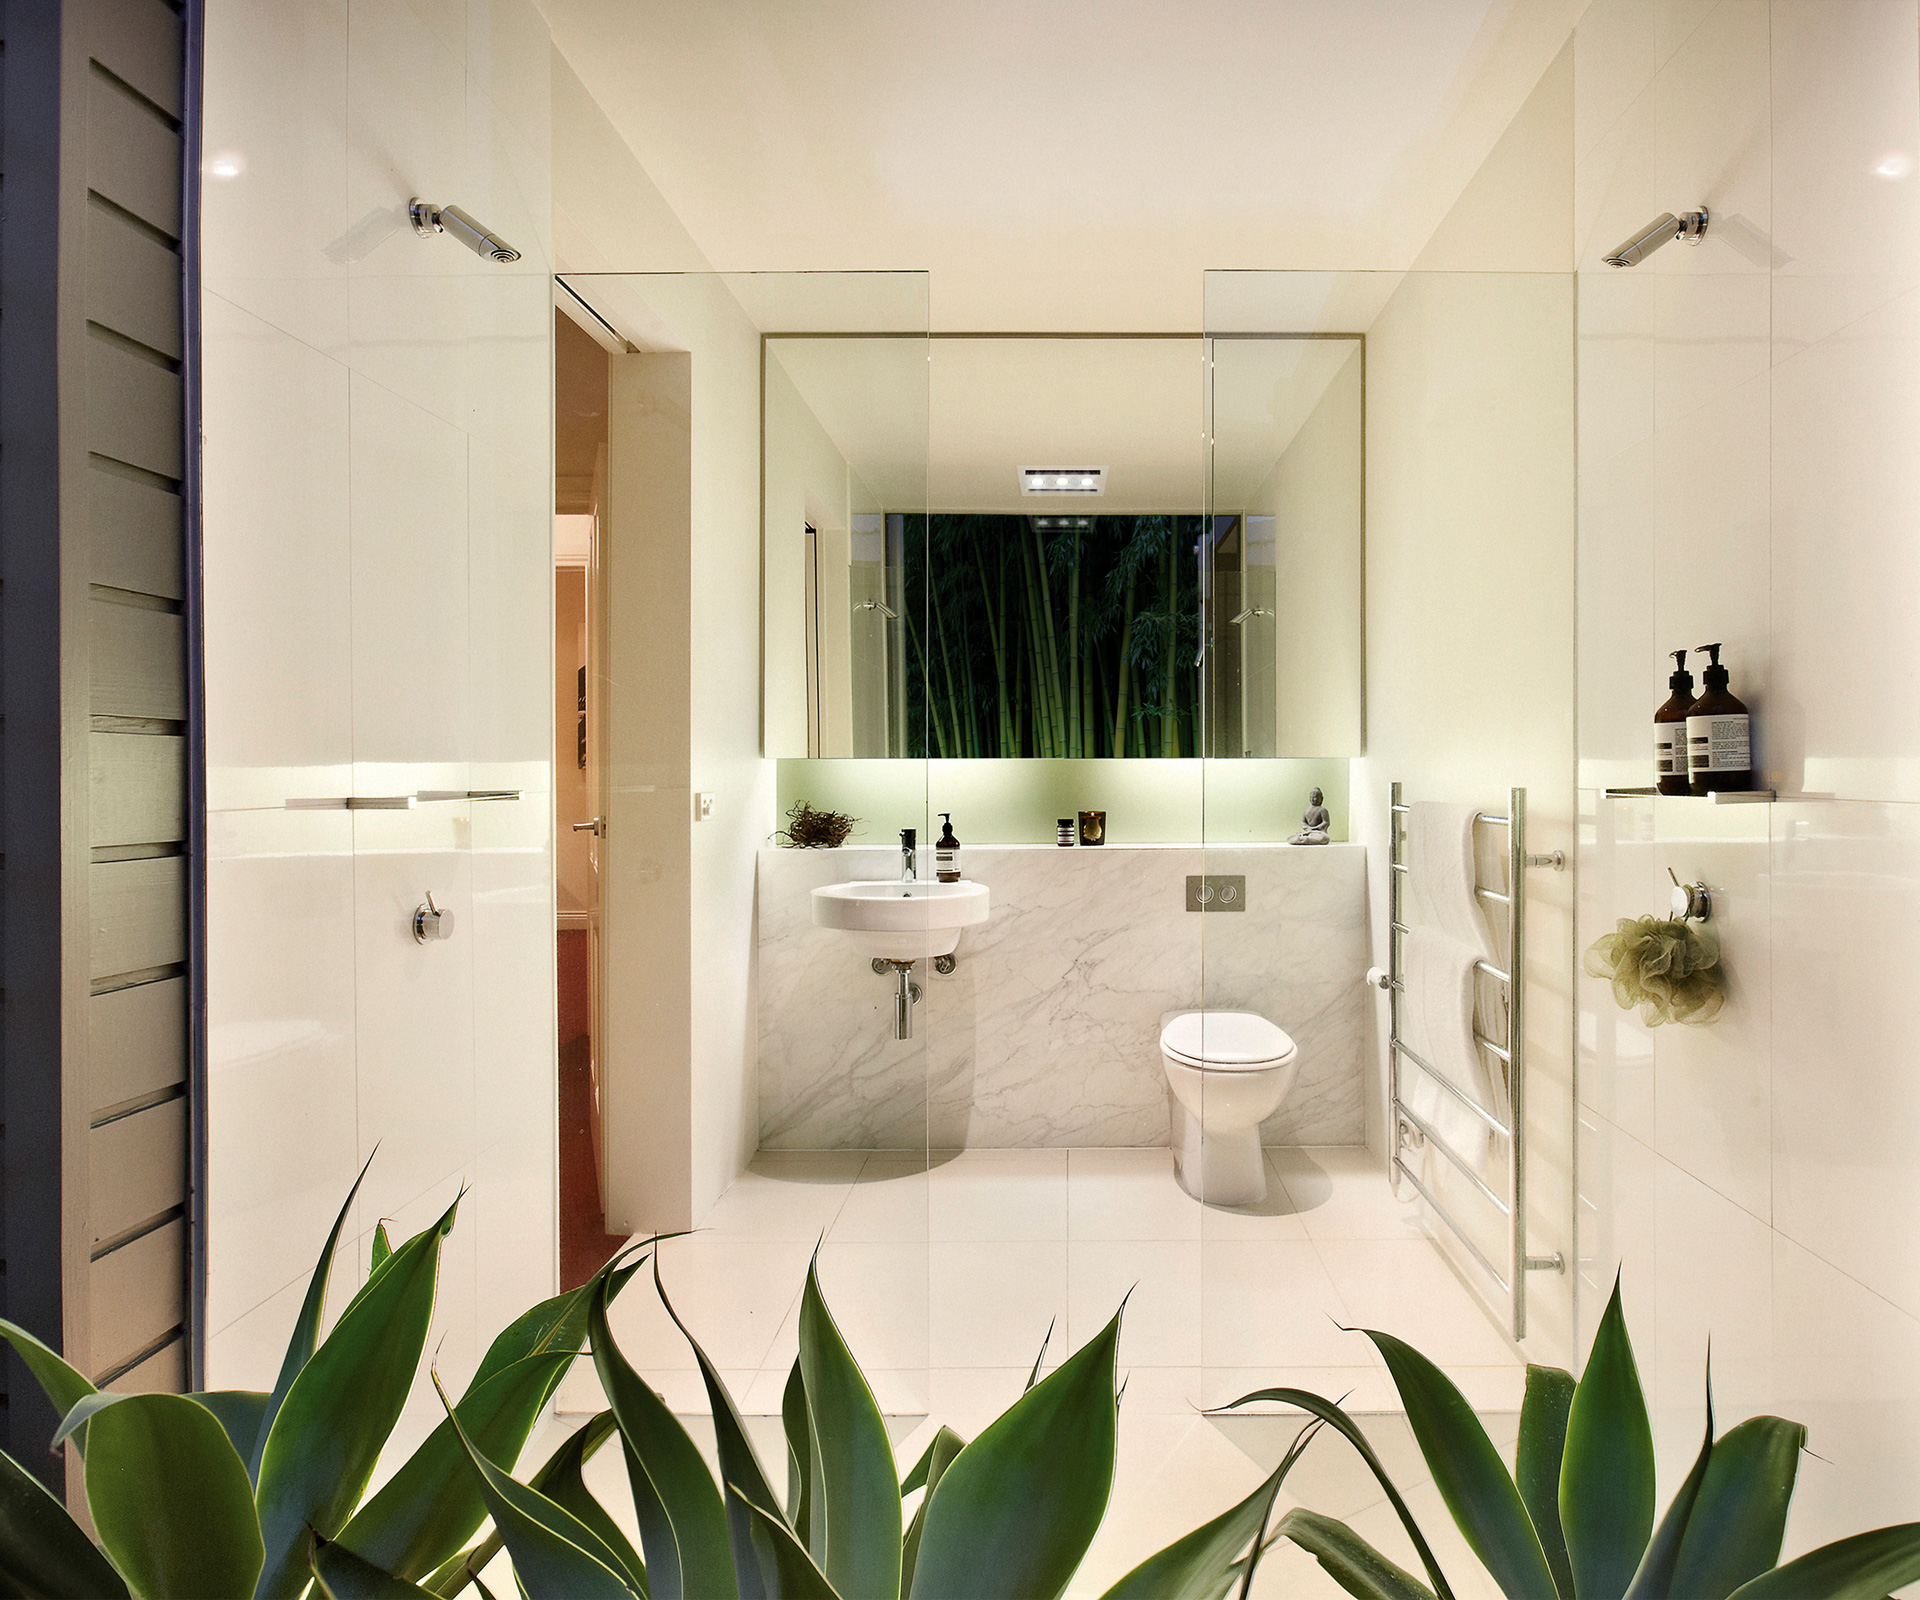 6 easy ways you can achieve an ecofriendly bathroom